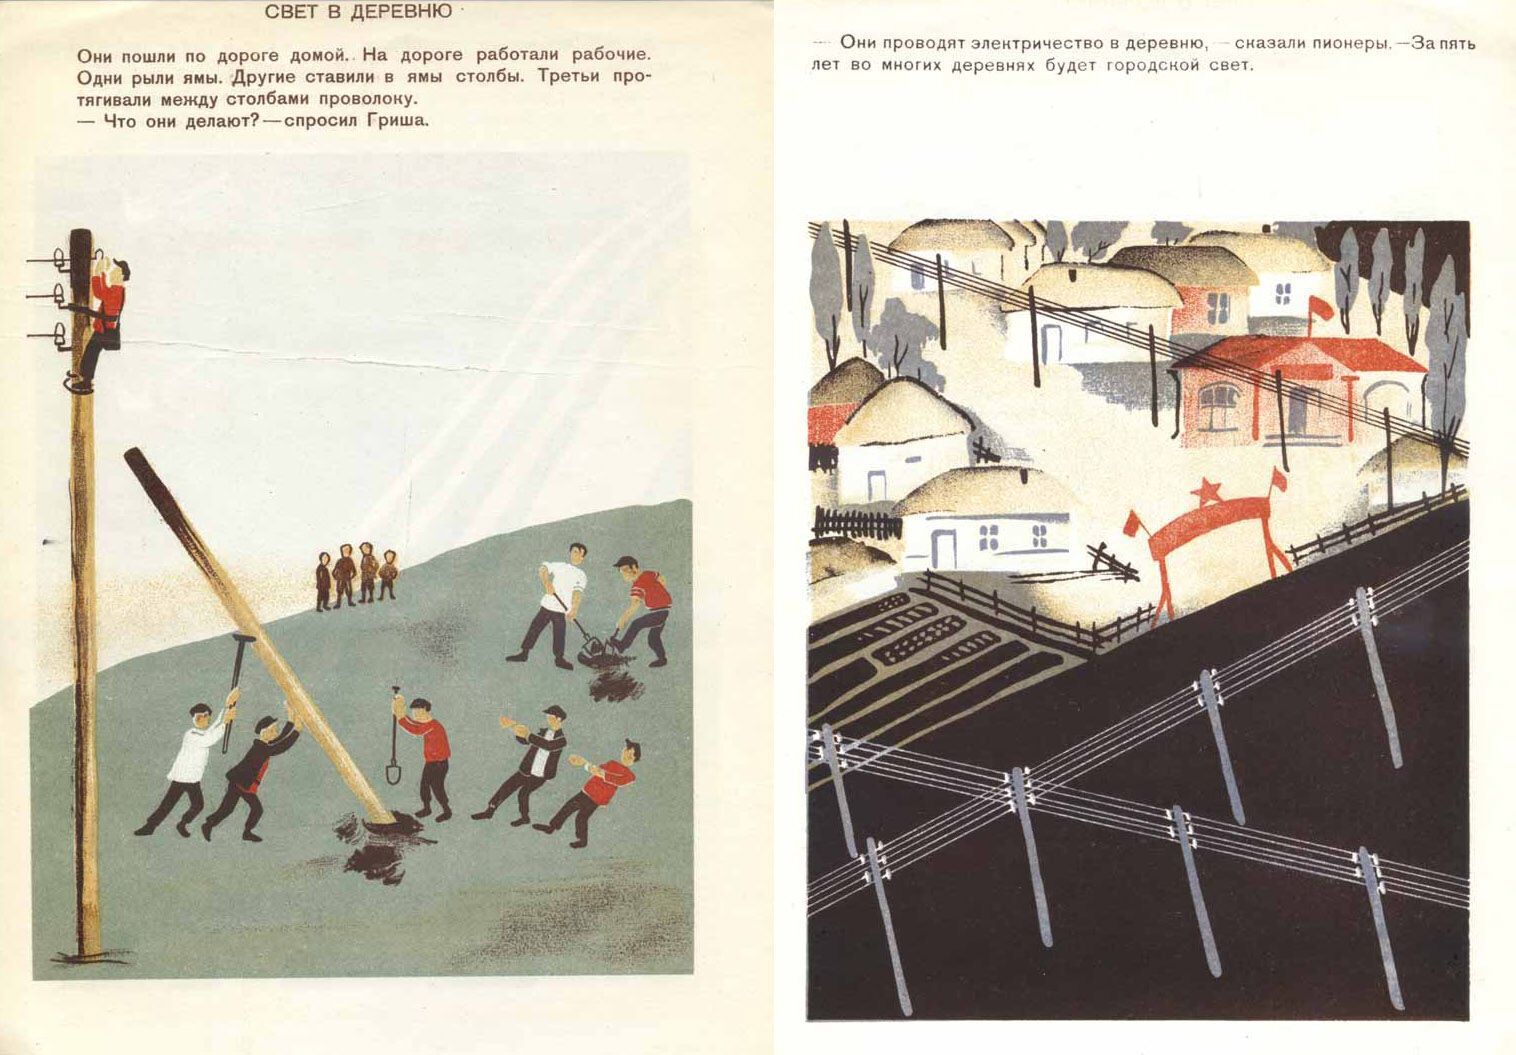 С помощью пропаганды в 1920-х годах в СССР пытались создать иллюзию благополучия